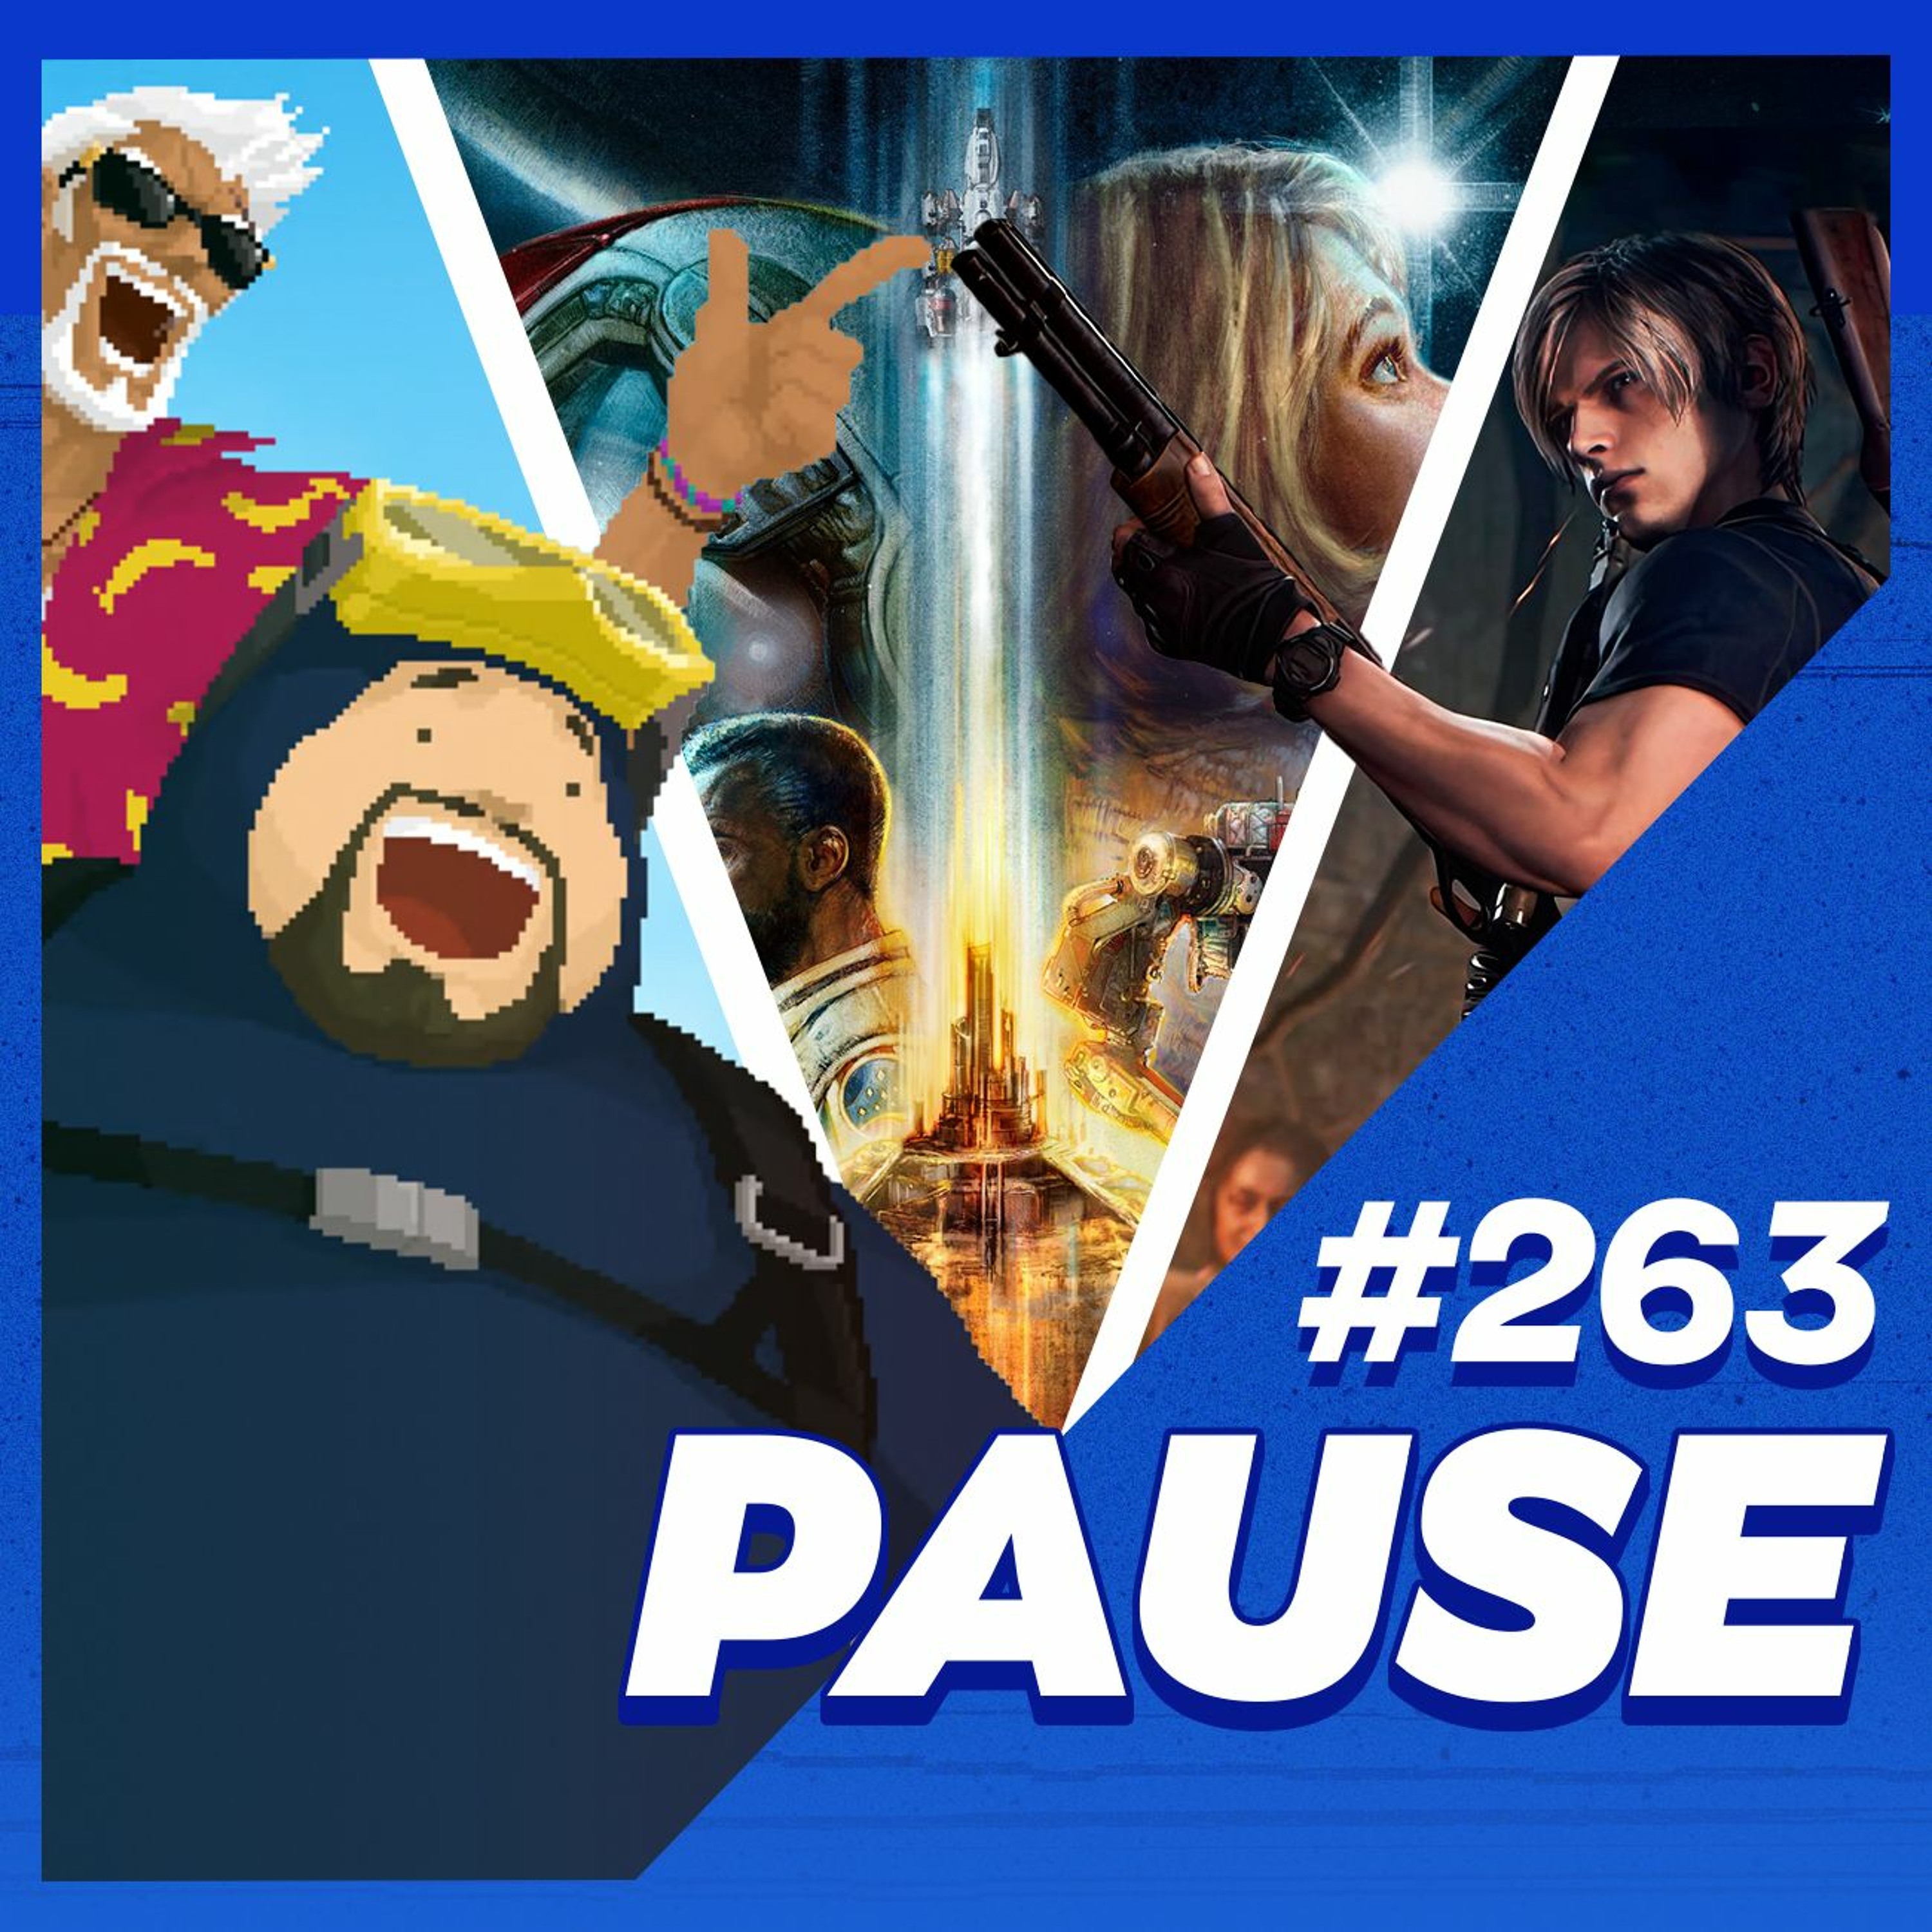 Pause 263 - Polemicas nas indicações do The Game Awards